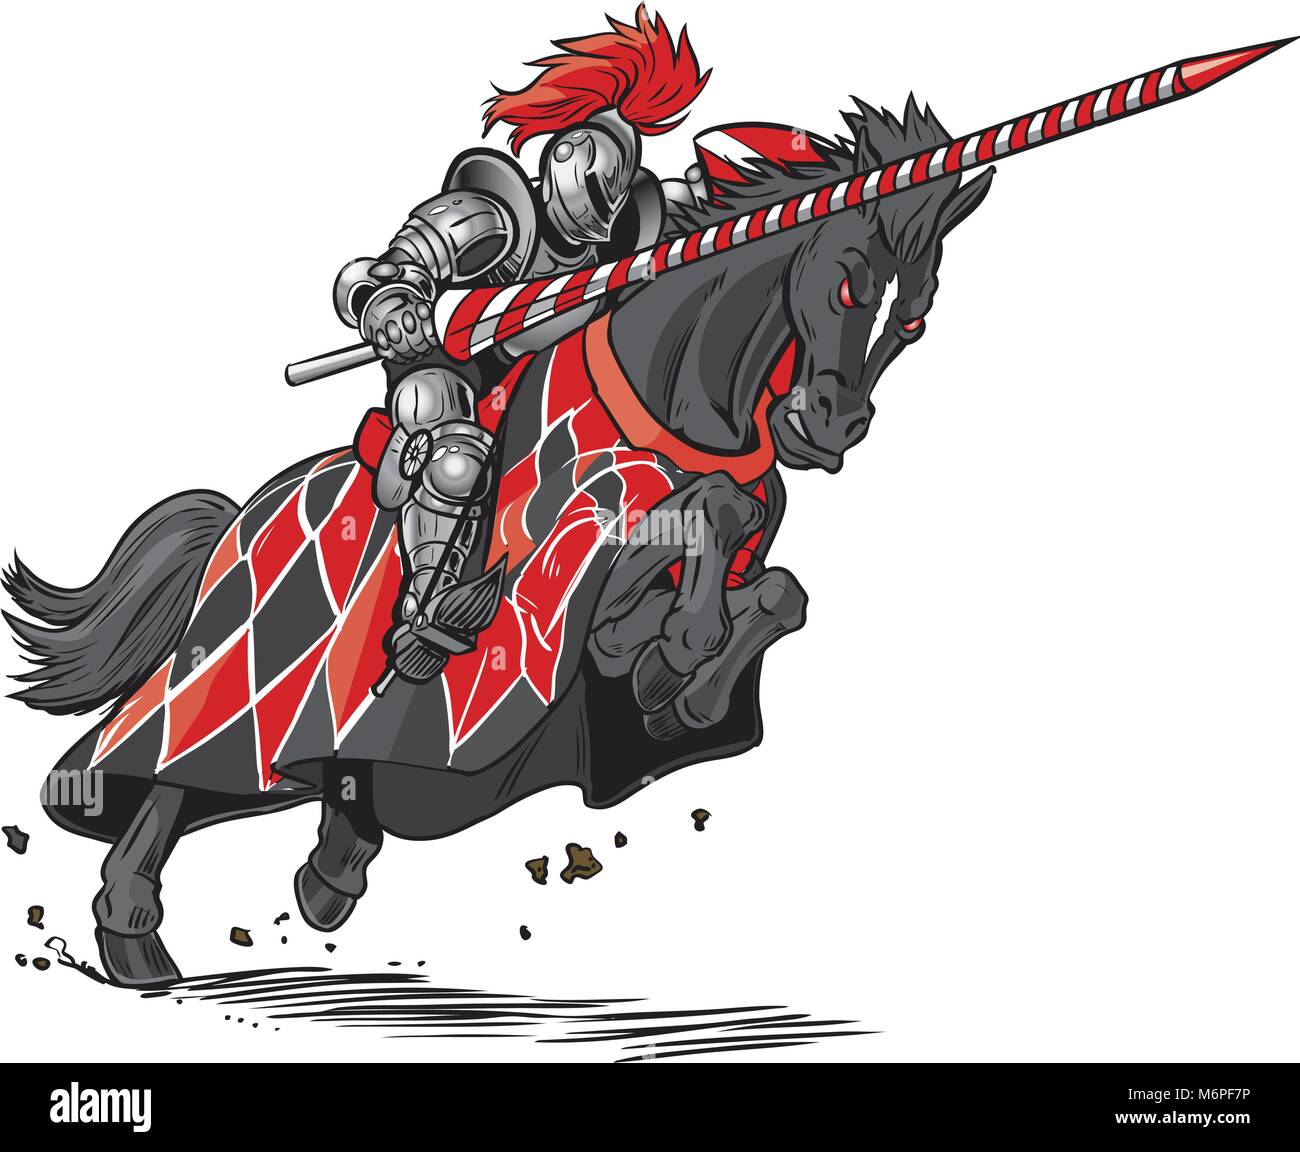 Vektor cartoon clip art Illustration eines gepanzerten Ritter auf einem unheimlichen, schwarzen Pferd mit roten Augen aufladen oder ritterspiele mit Lanze und Schild. Stock Vektor